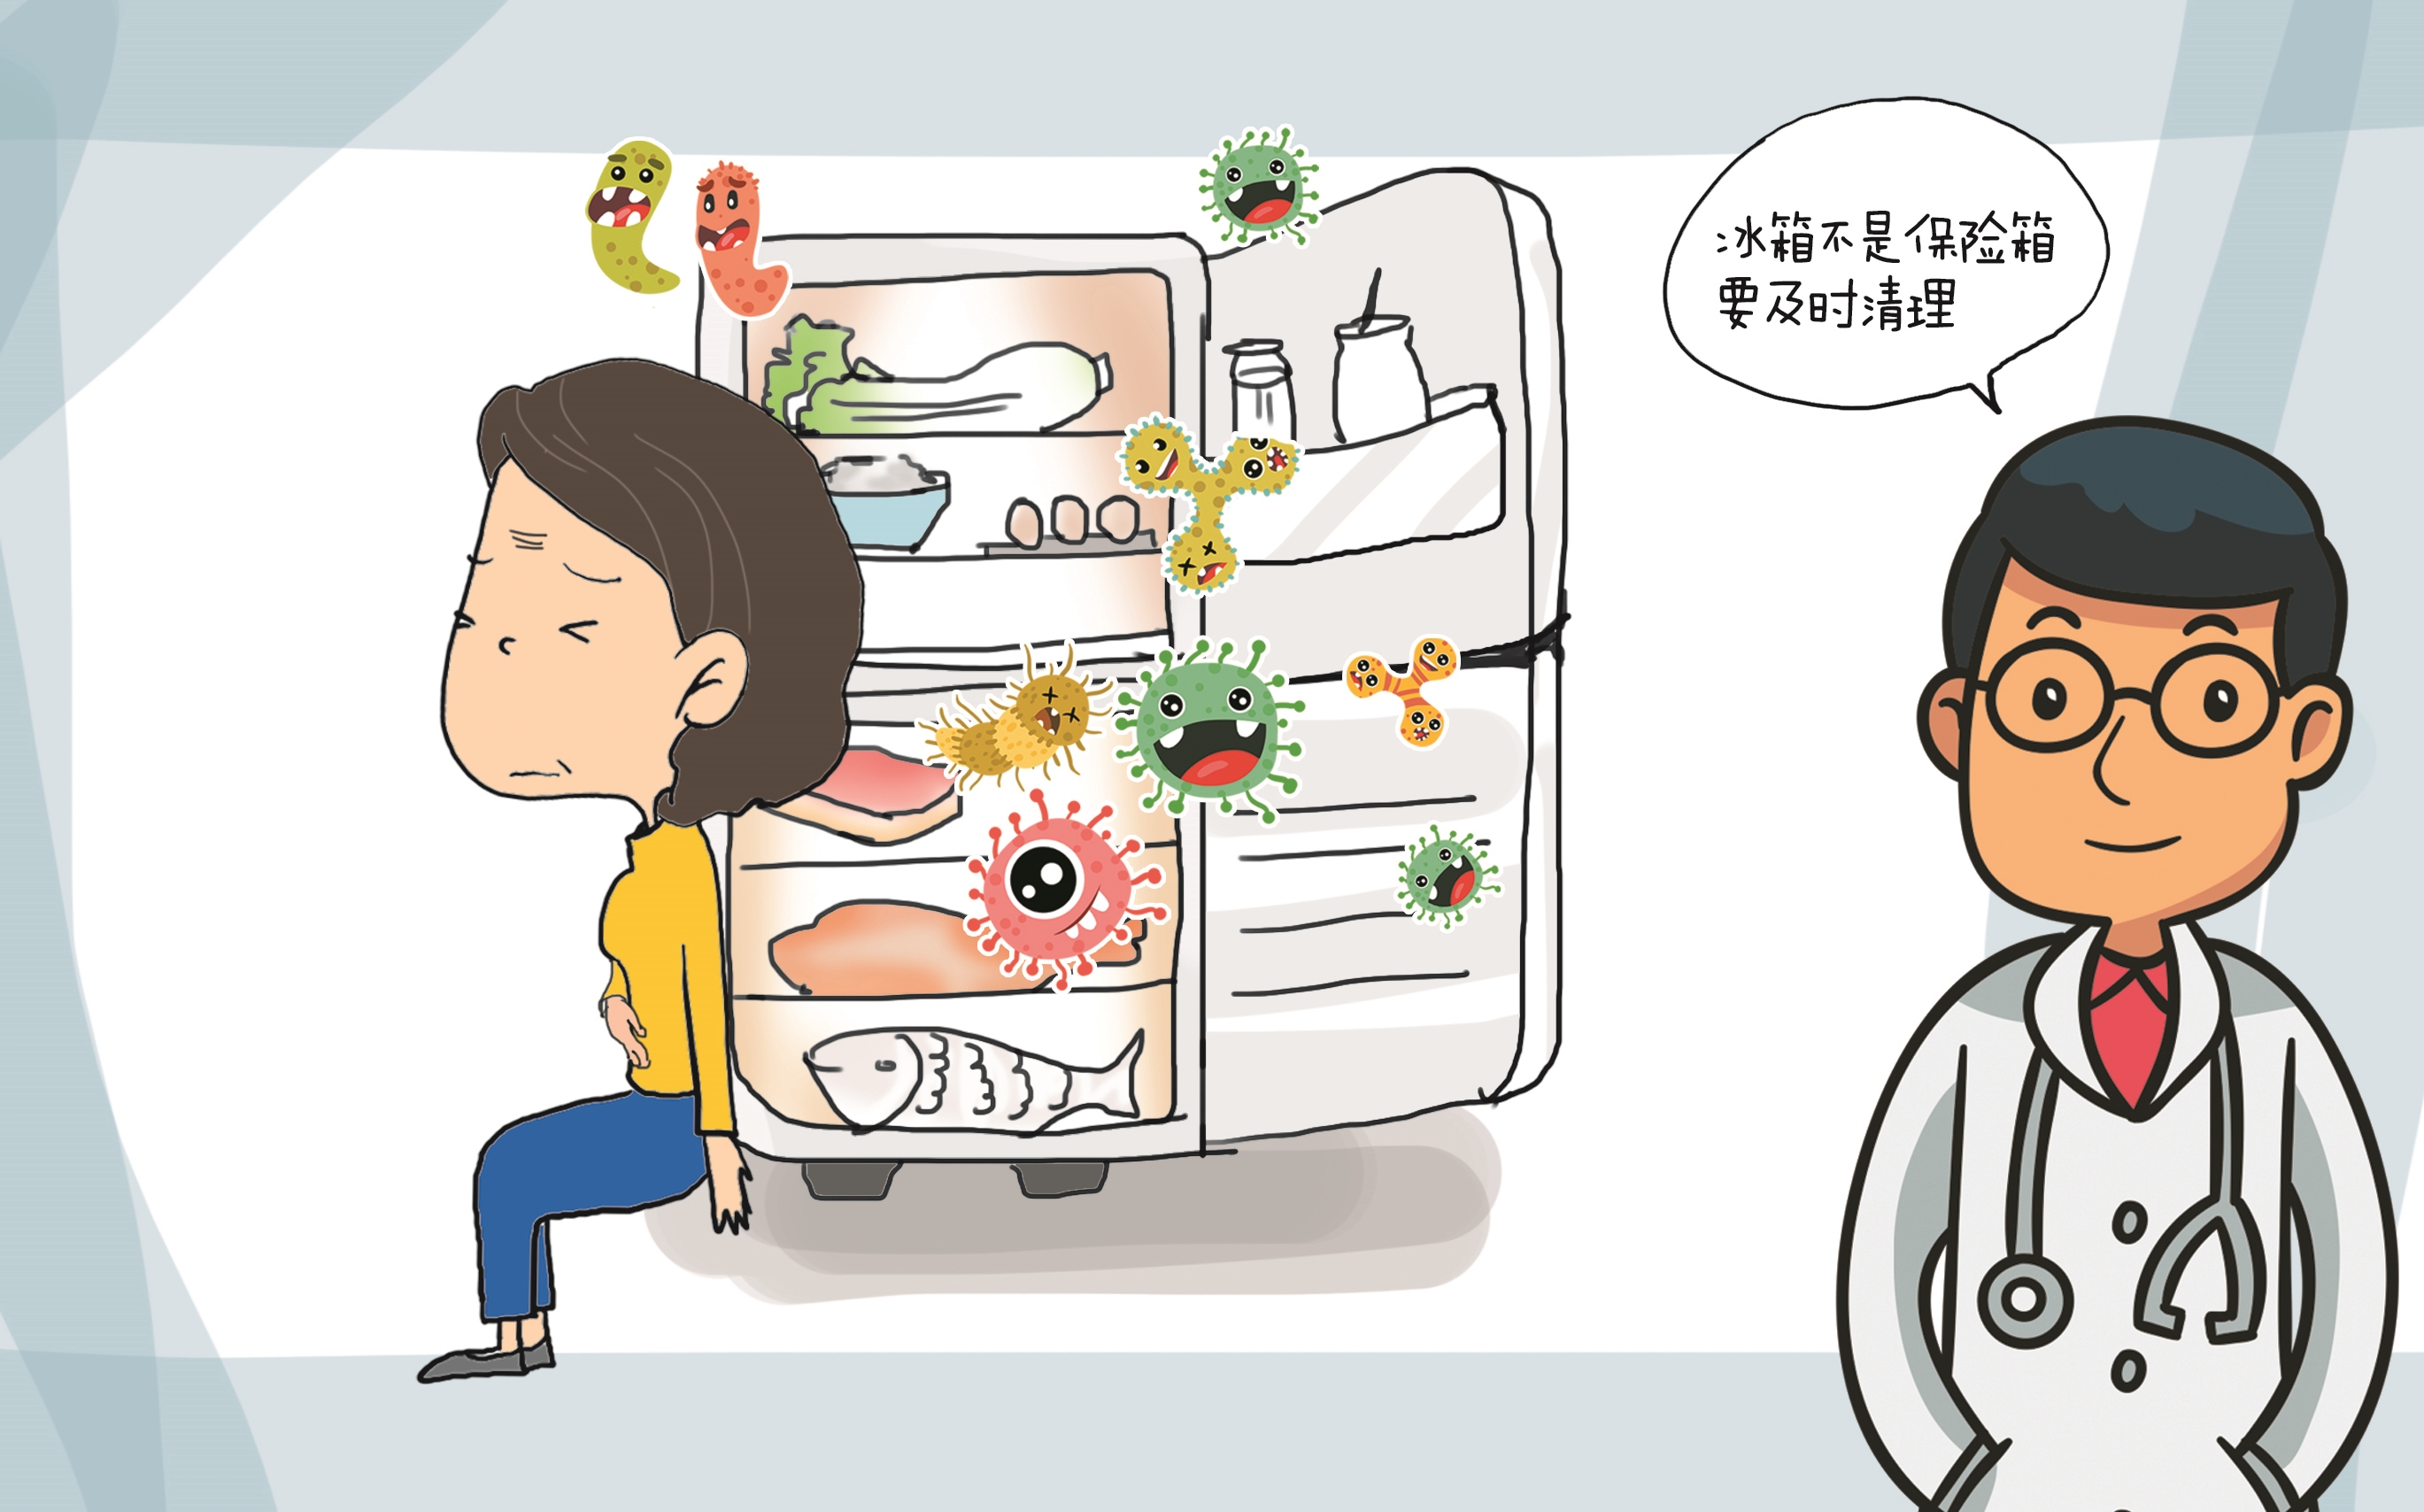 注意!冰箱不是万能保险箱,春节临近专家提醒科学存储更健康